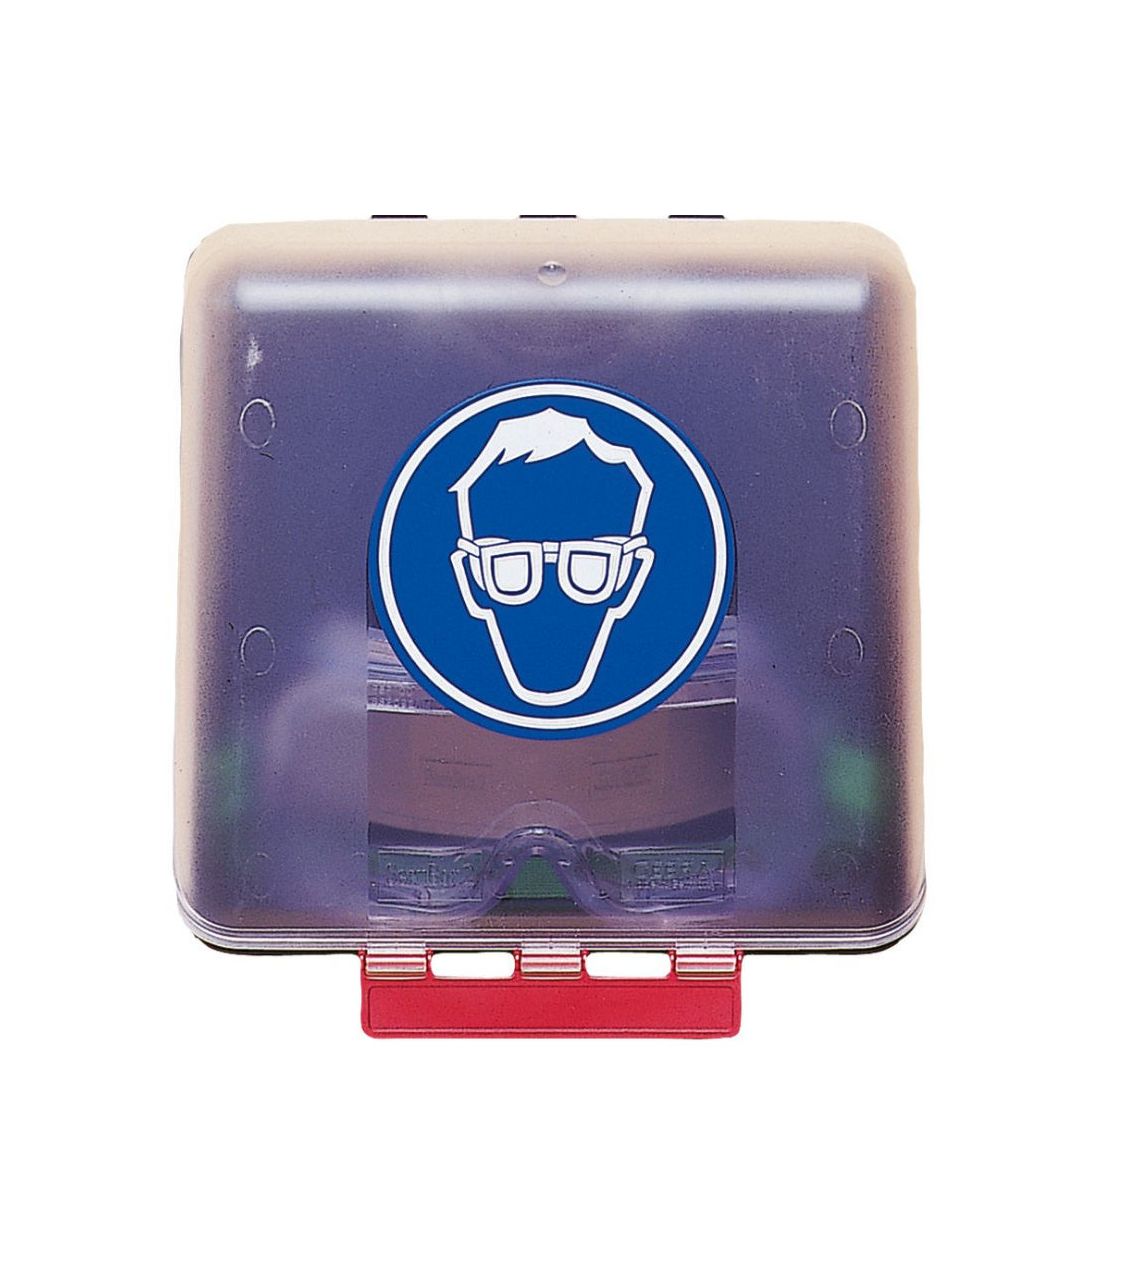 Aufbewahrungsbox für Schutzbrillen. Kippdeckel transparent, 235×225×125 mm.